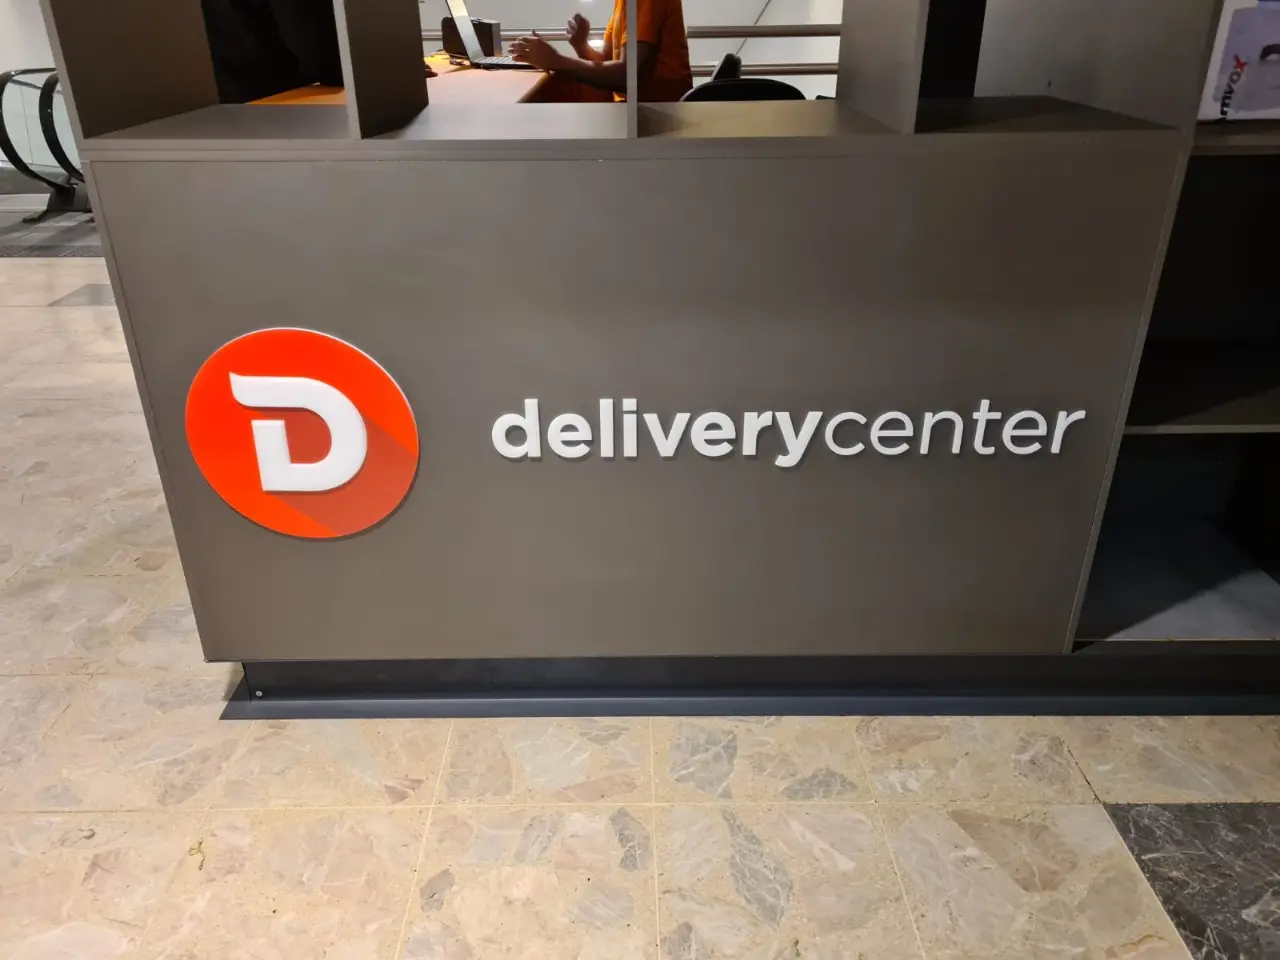 Fachada comercial da empresa Delivery Center